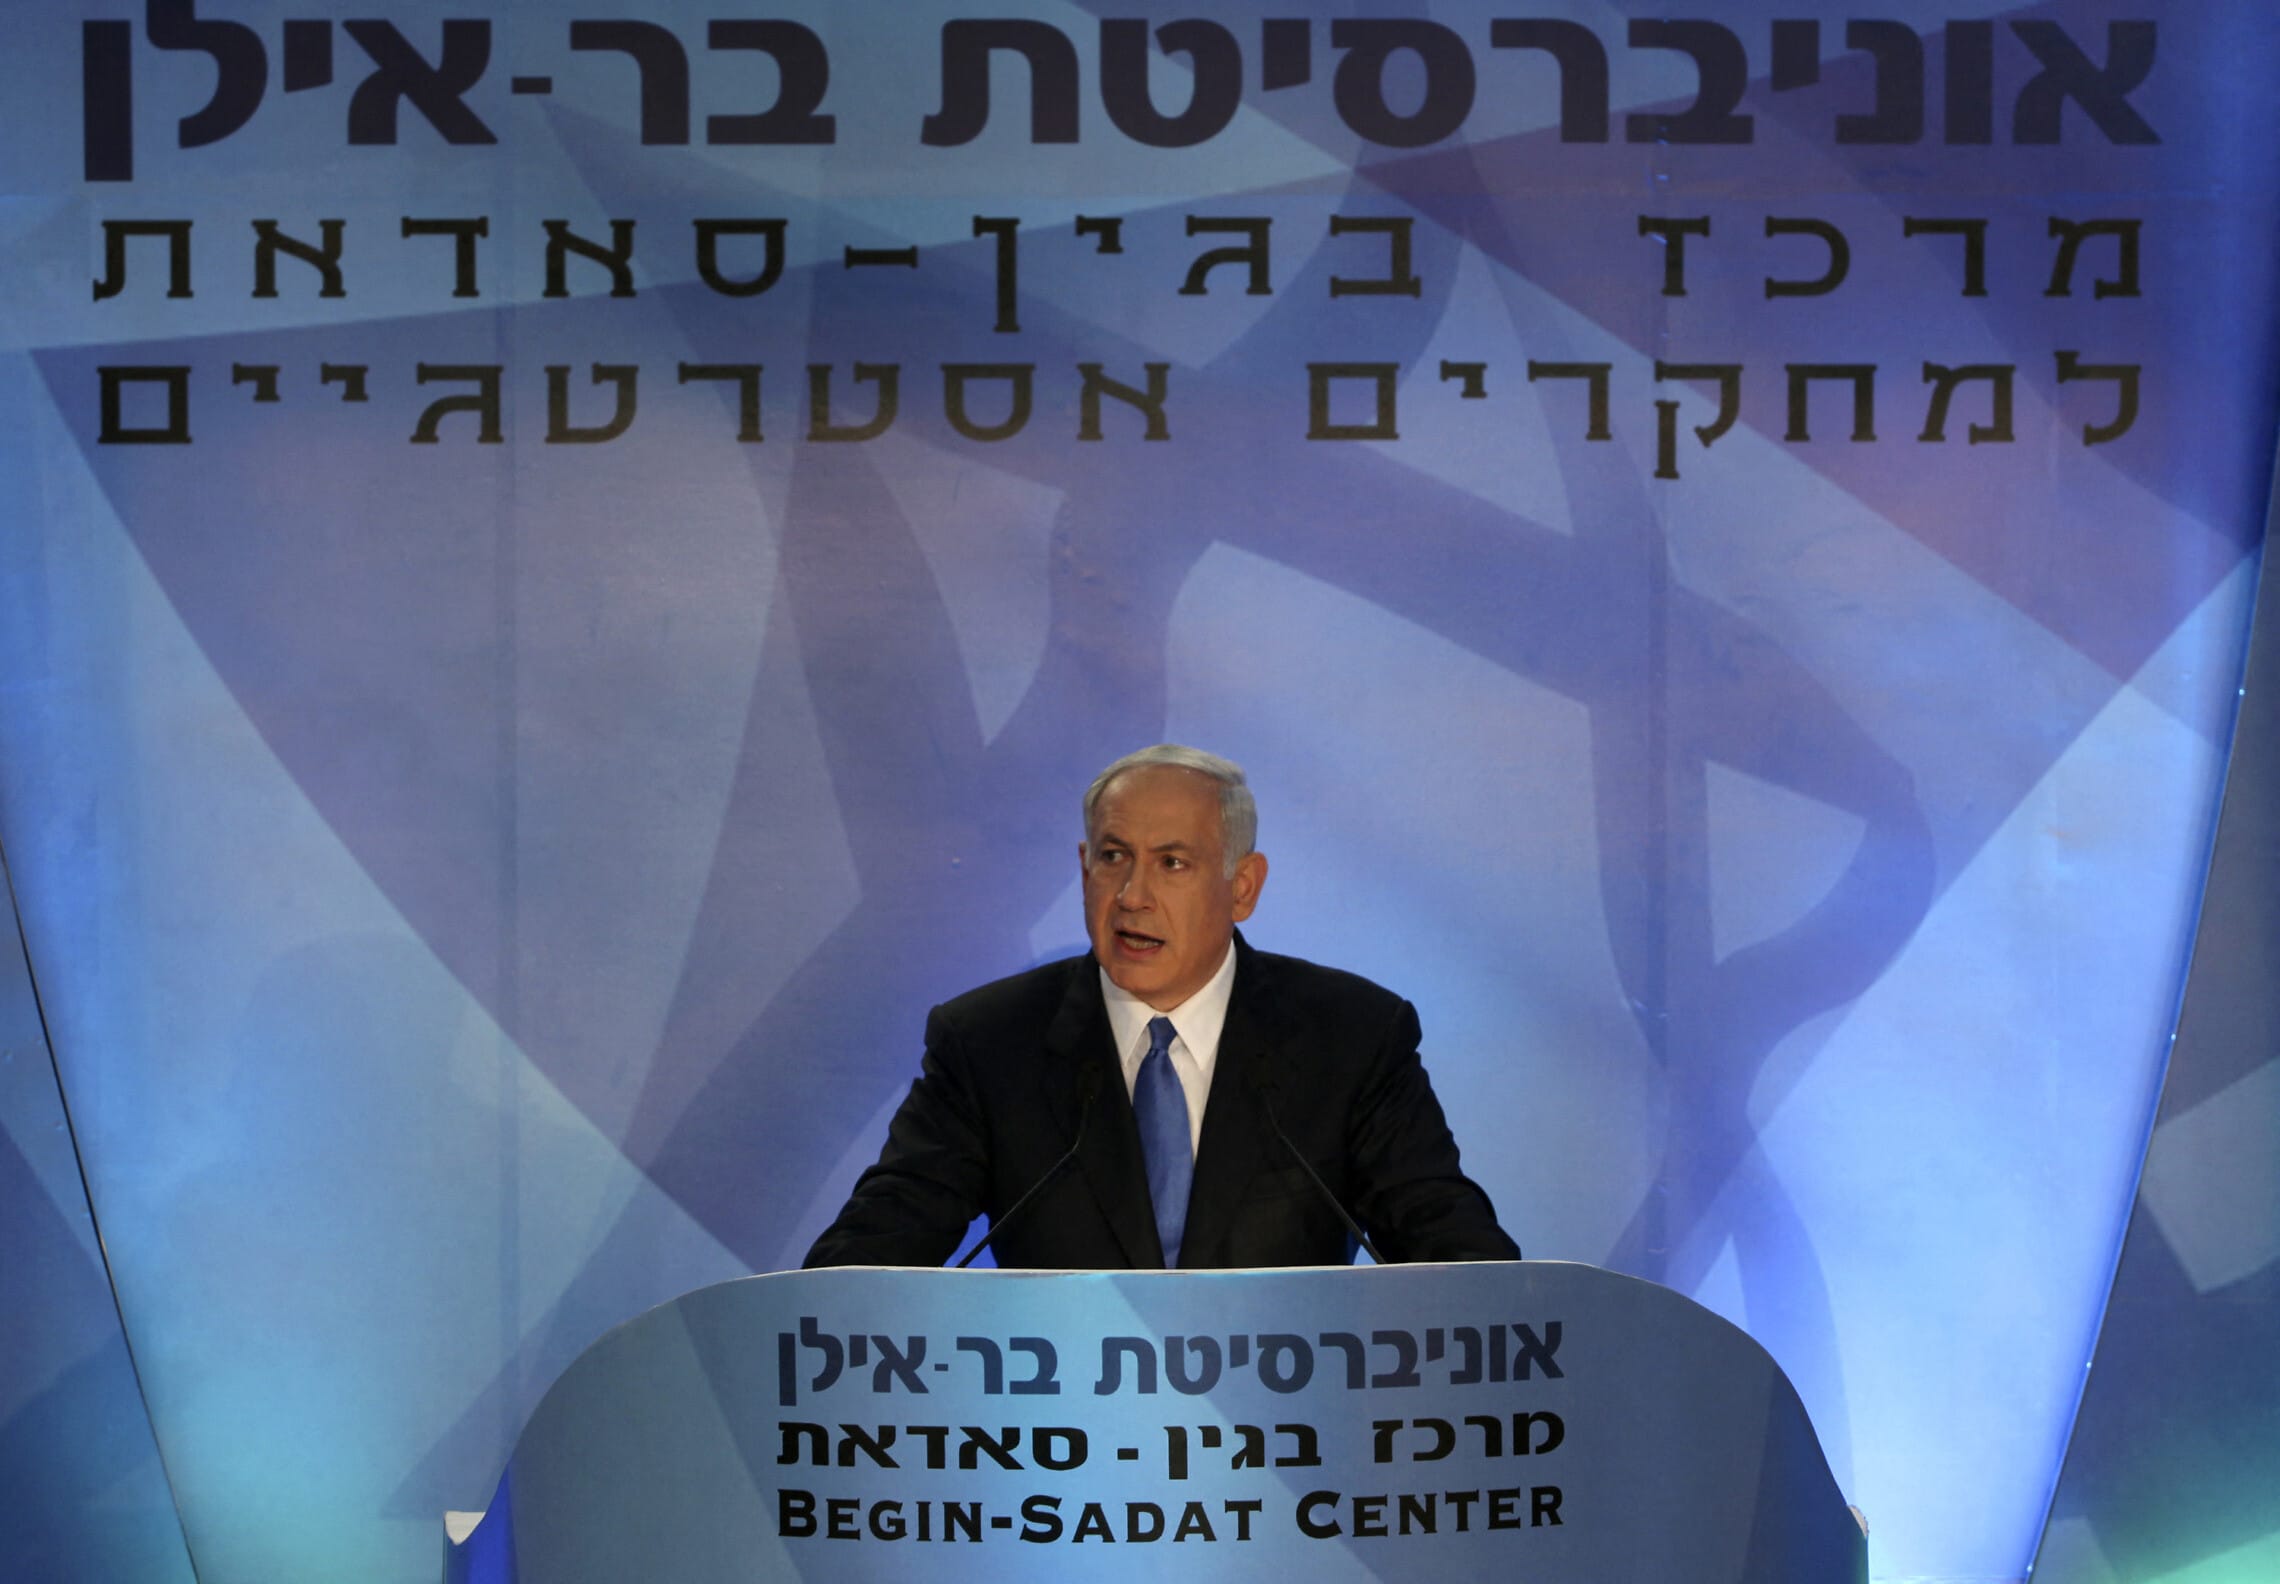 ראש הממשלה בנימין נתניהו מציג את חזונו בעניין הסכסוך הישראלי-פלסטיני באוניברסיטת בר-אילן, 14 ביוני 2009 (צילום: BAZ RATNER / POOL / AFP)